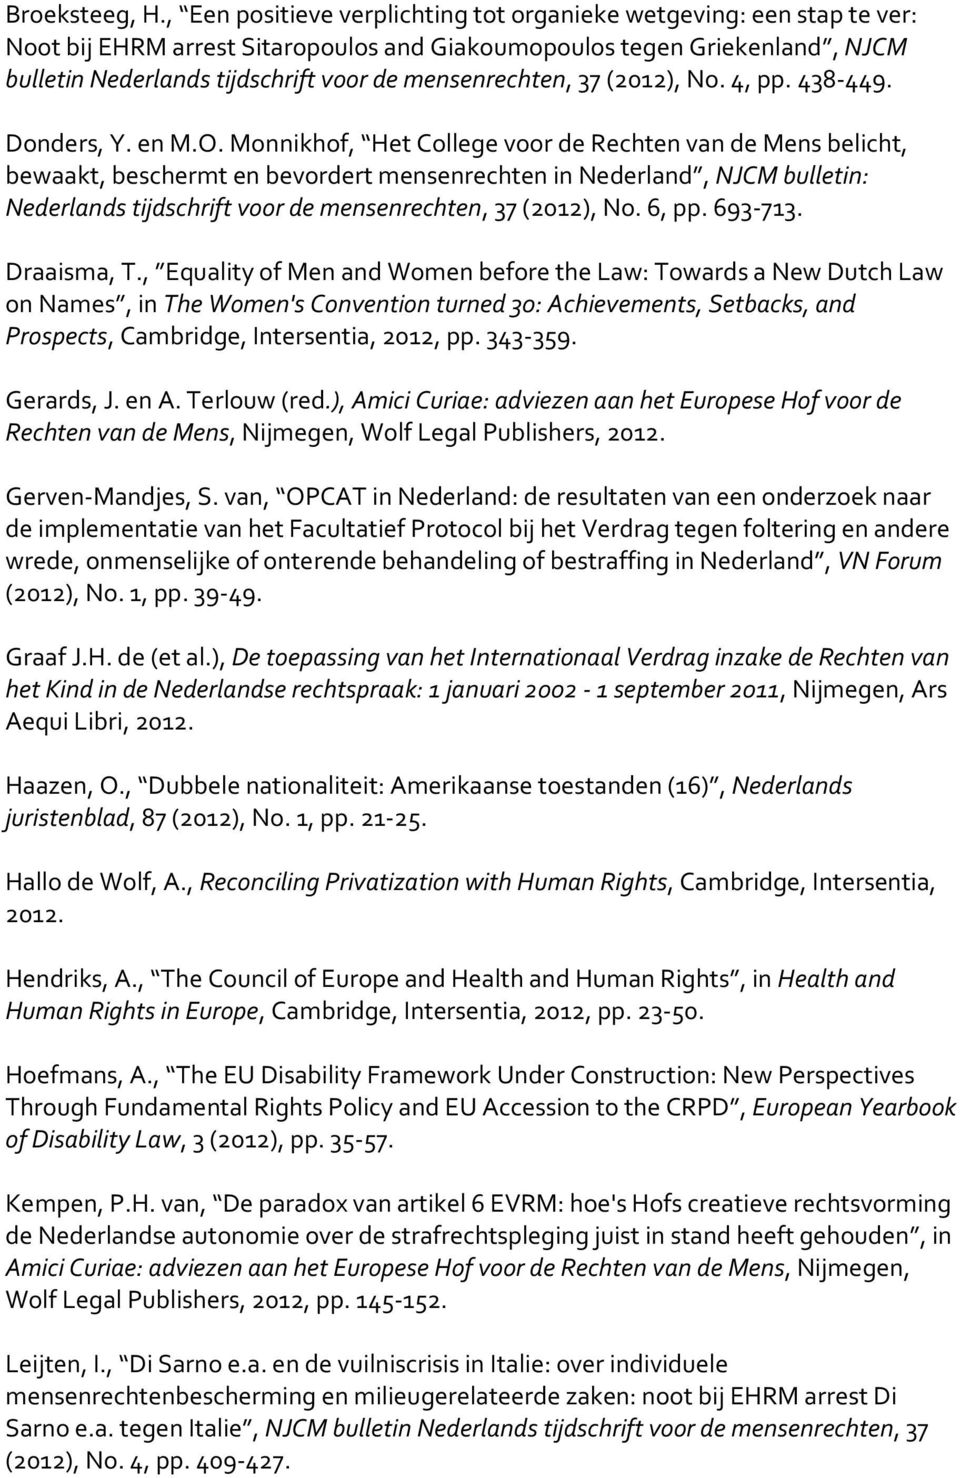 mensenrechten, 37 (2012), No. 4, pp. 438-449. Donders, Y. en M.O.